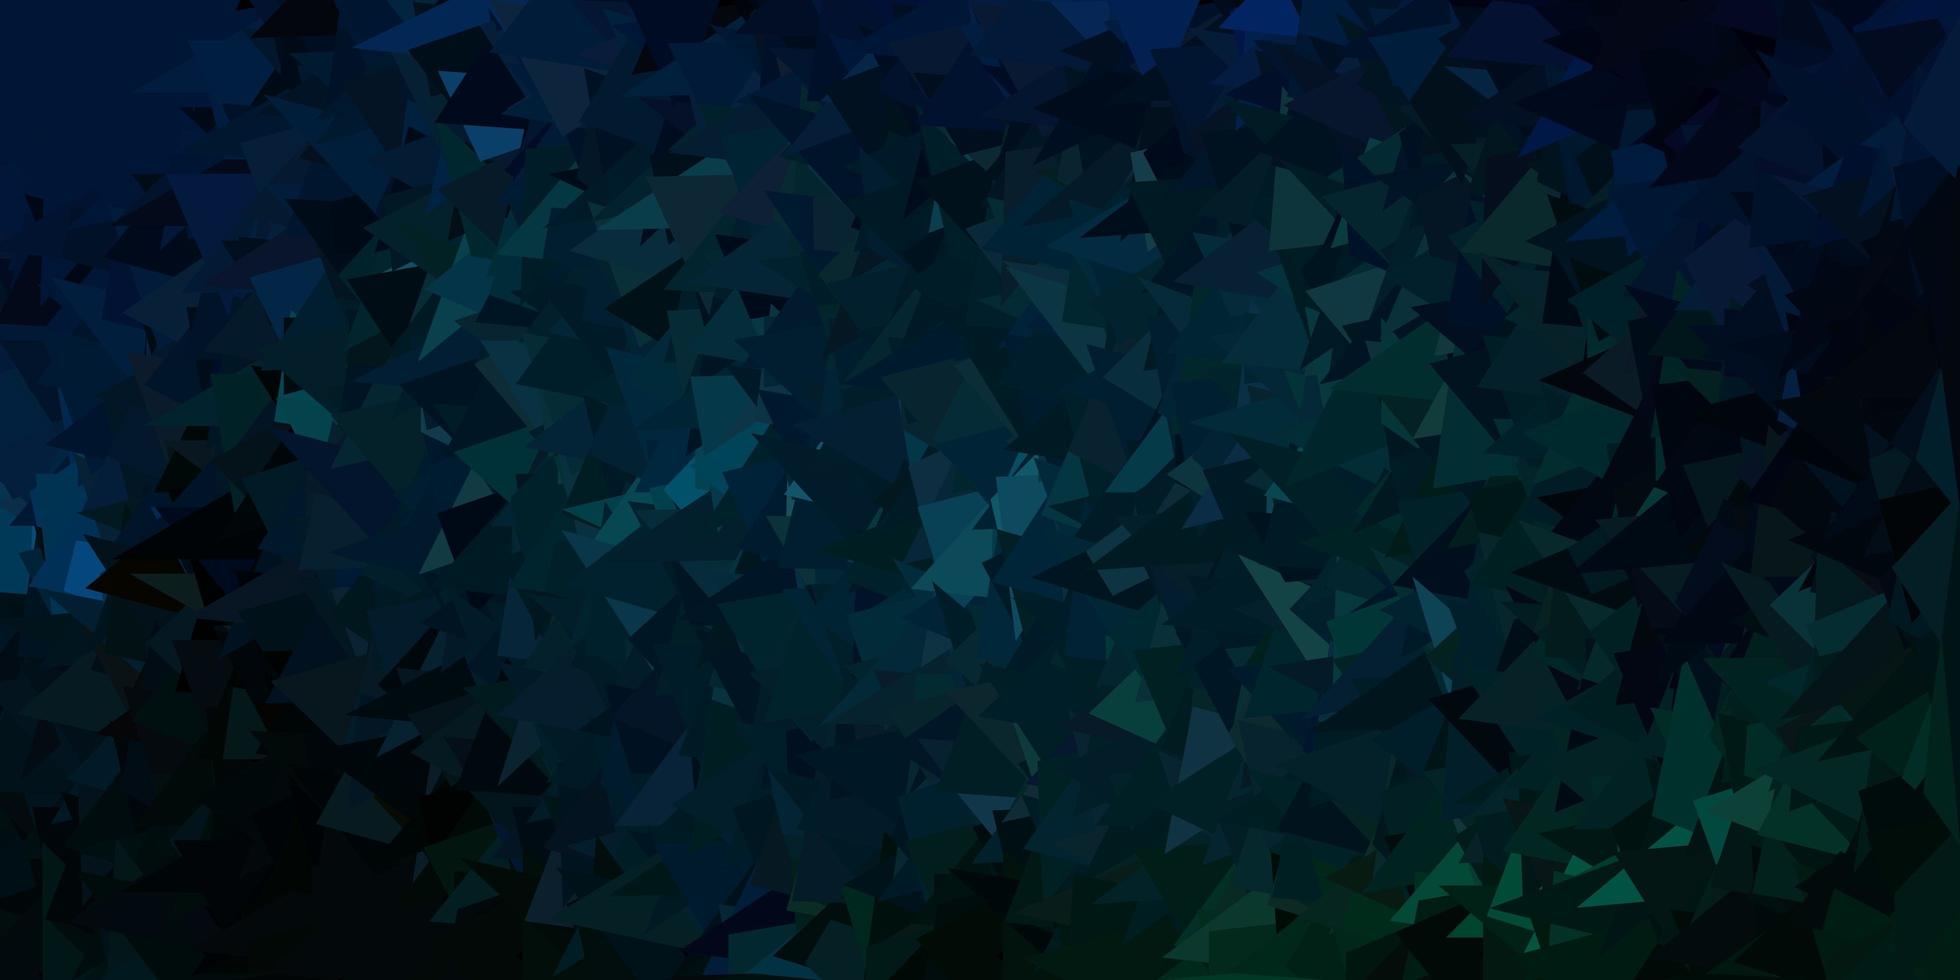 cenário poligonal de vetor azul e verde escuro.